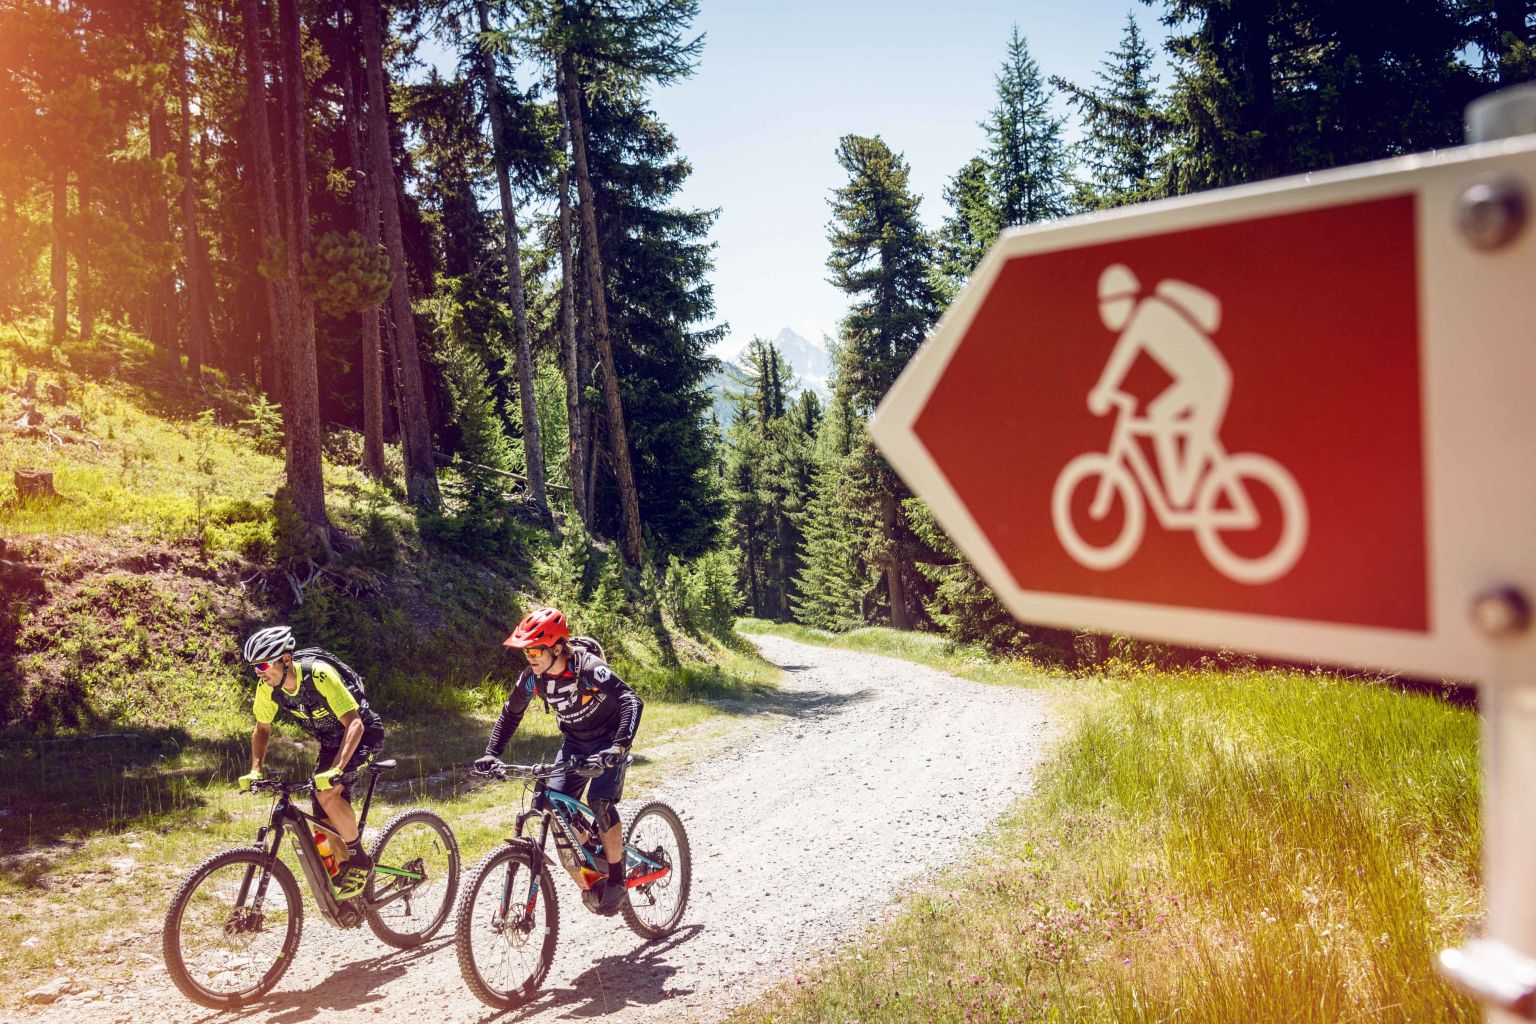 Panneau de signalisation afin de guider les cyclistes en e-bike à trouver leur chemin, Valais Wallis Suisse